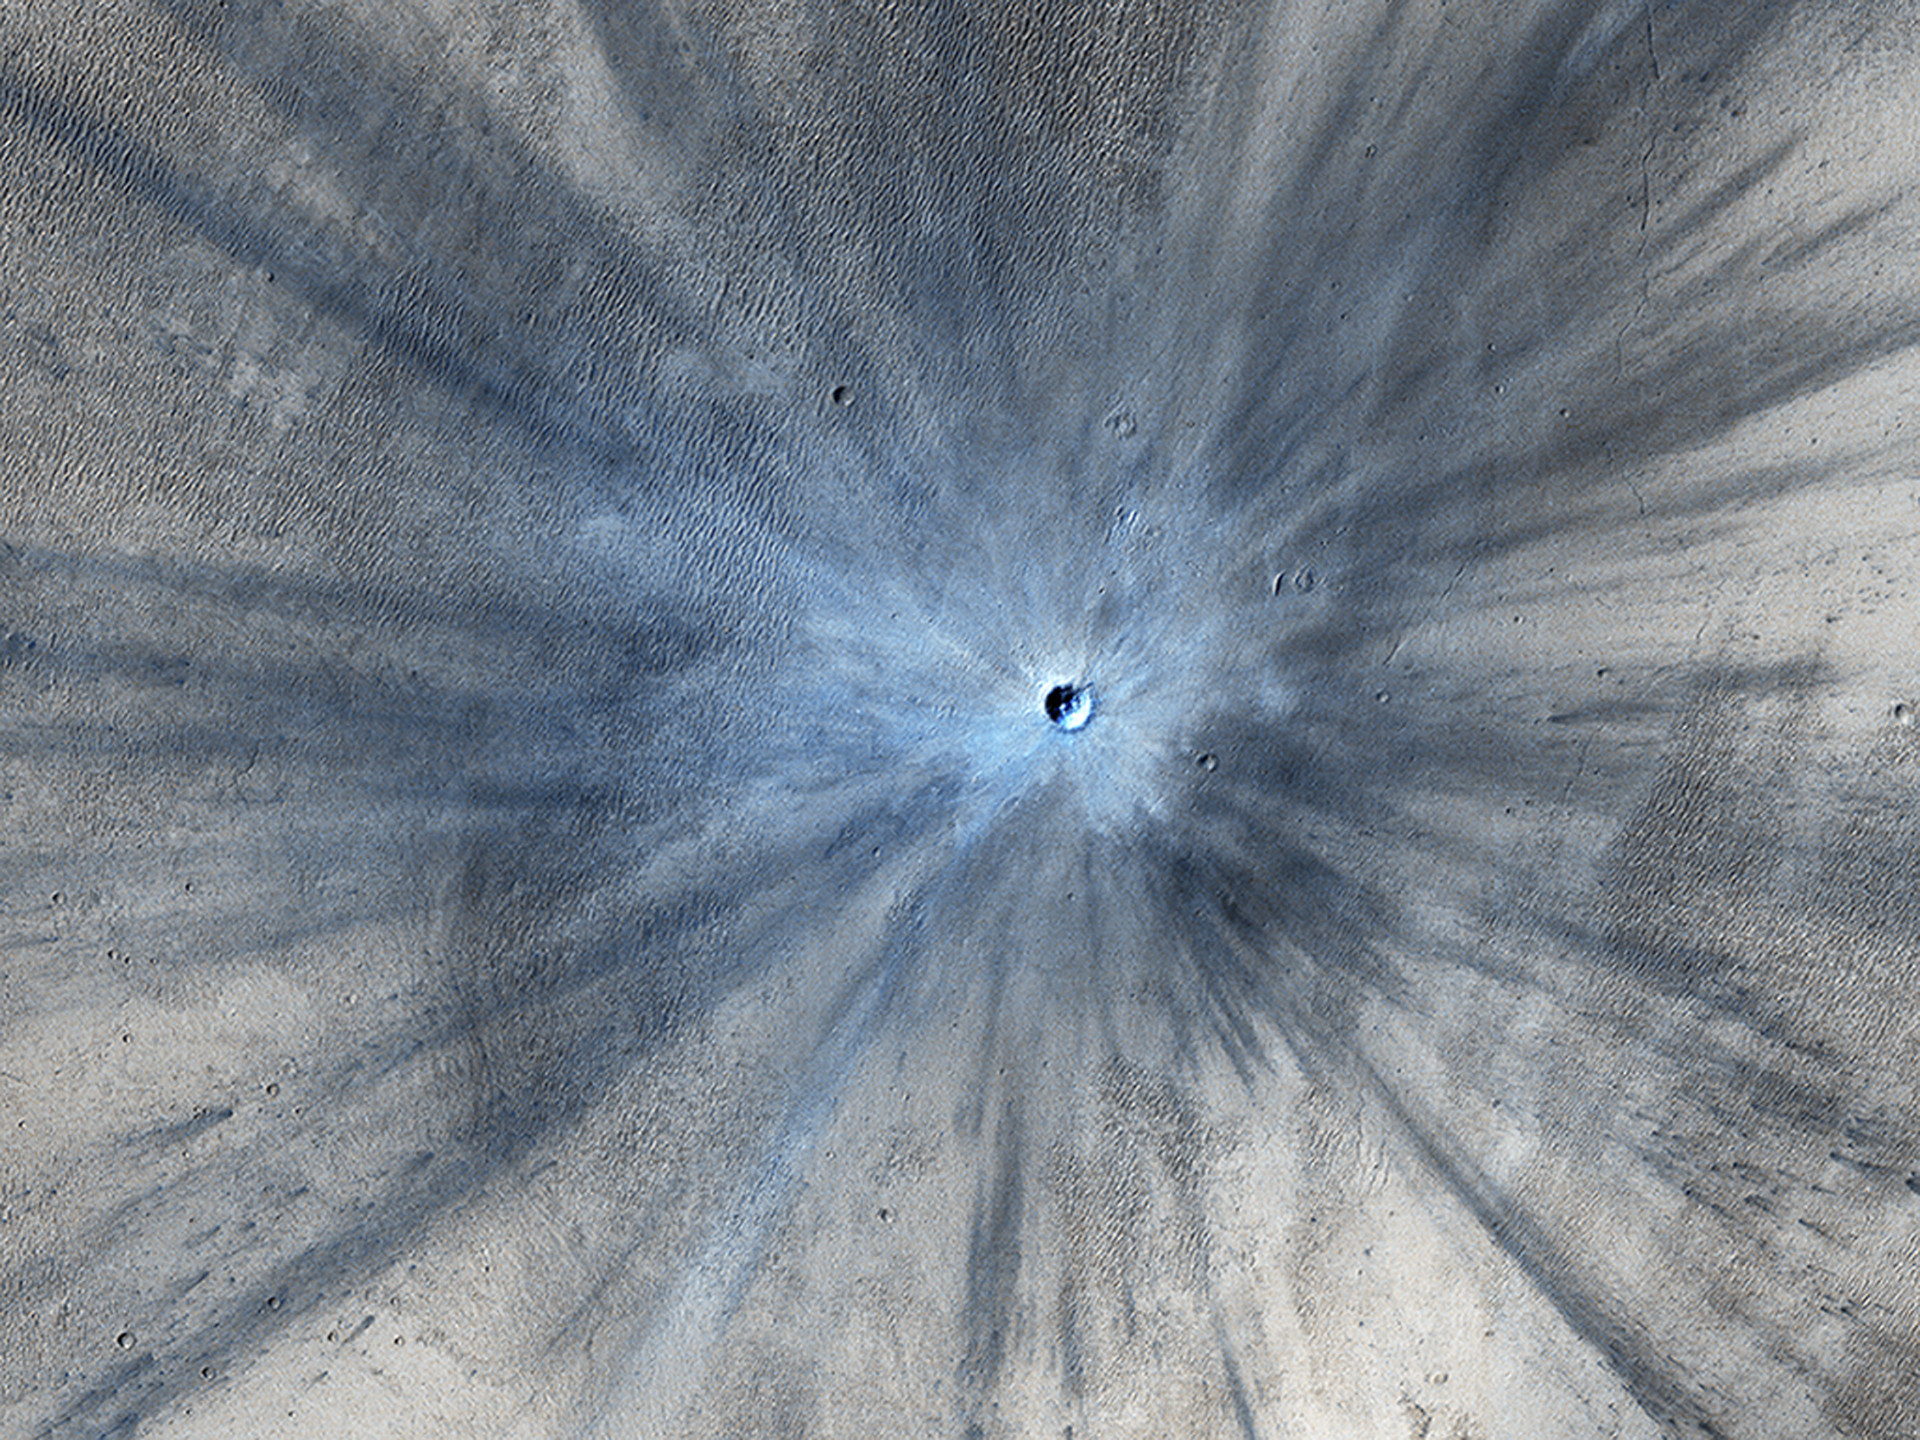 Esta imagem de uma cratera de impacto em Marte foi capturada por um orbitador, uma nave espacial orbital reutilizável do programa do ônibus espacial da NASA, a agência espacial dos Estados Unidos.